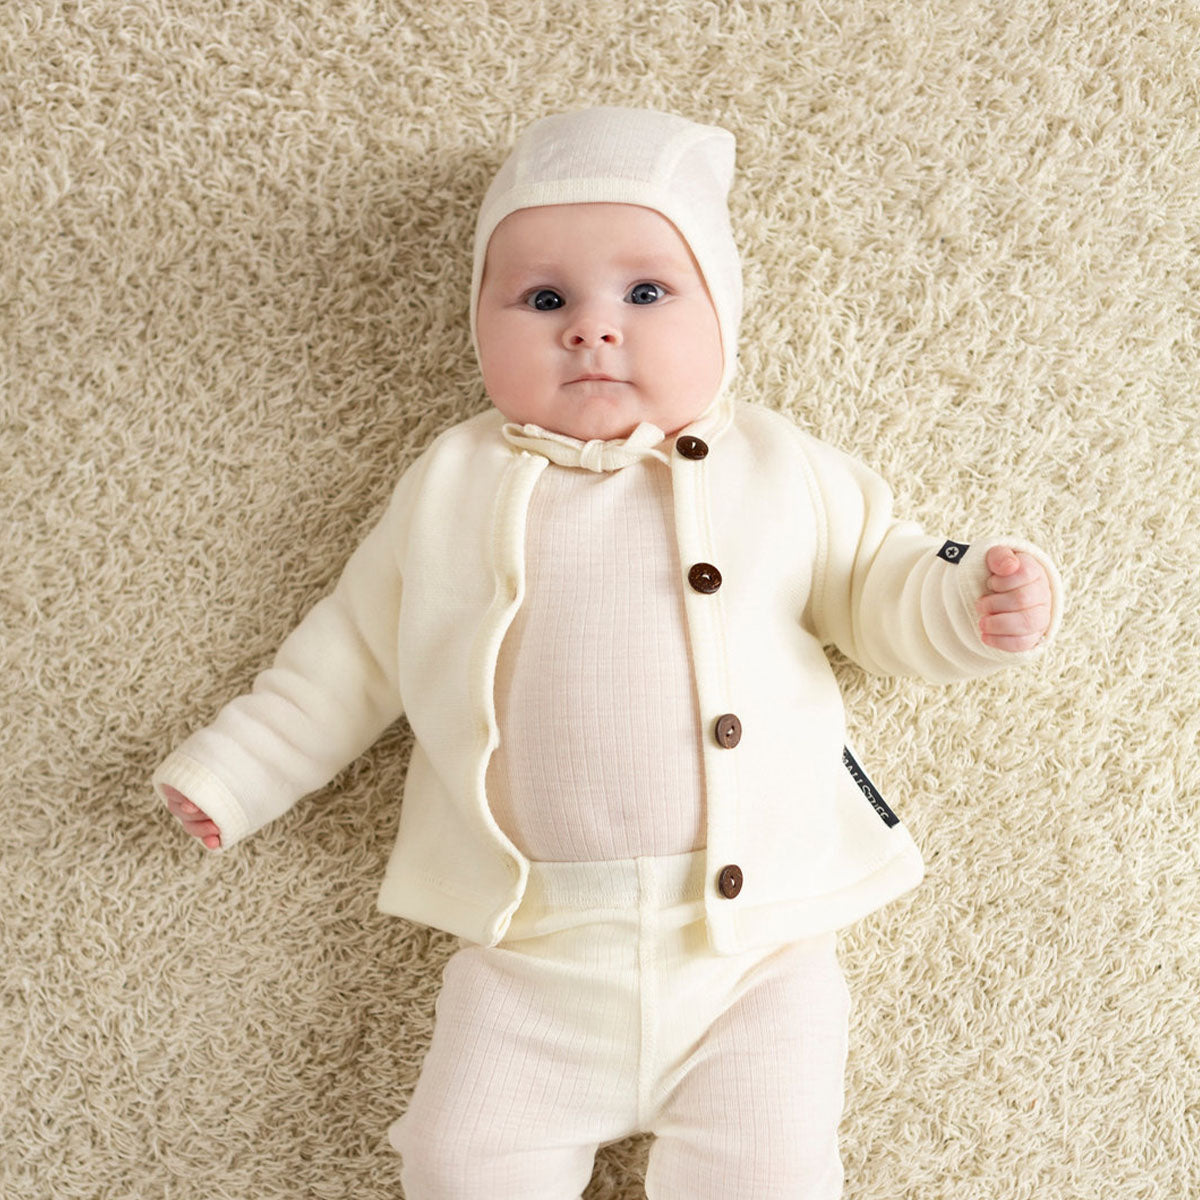 Dit merinowol vestje met knoopjes van Smallstuff in de kleur off white is een ideale basic om te hebben hangen in de kledingkast van je kleintje! Dit heerlijke vestje is lekker warm en zacht. Het veste is namelijk gemaakt van 100% merinowol. VanZus